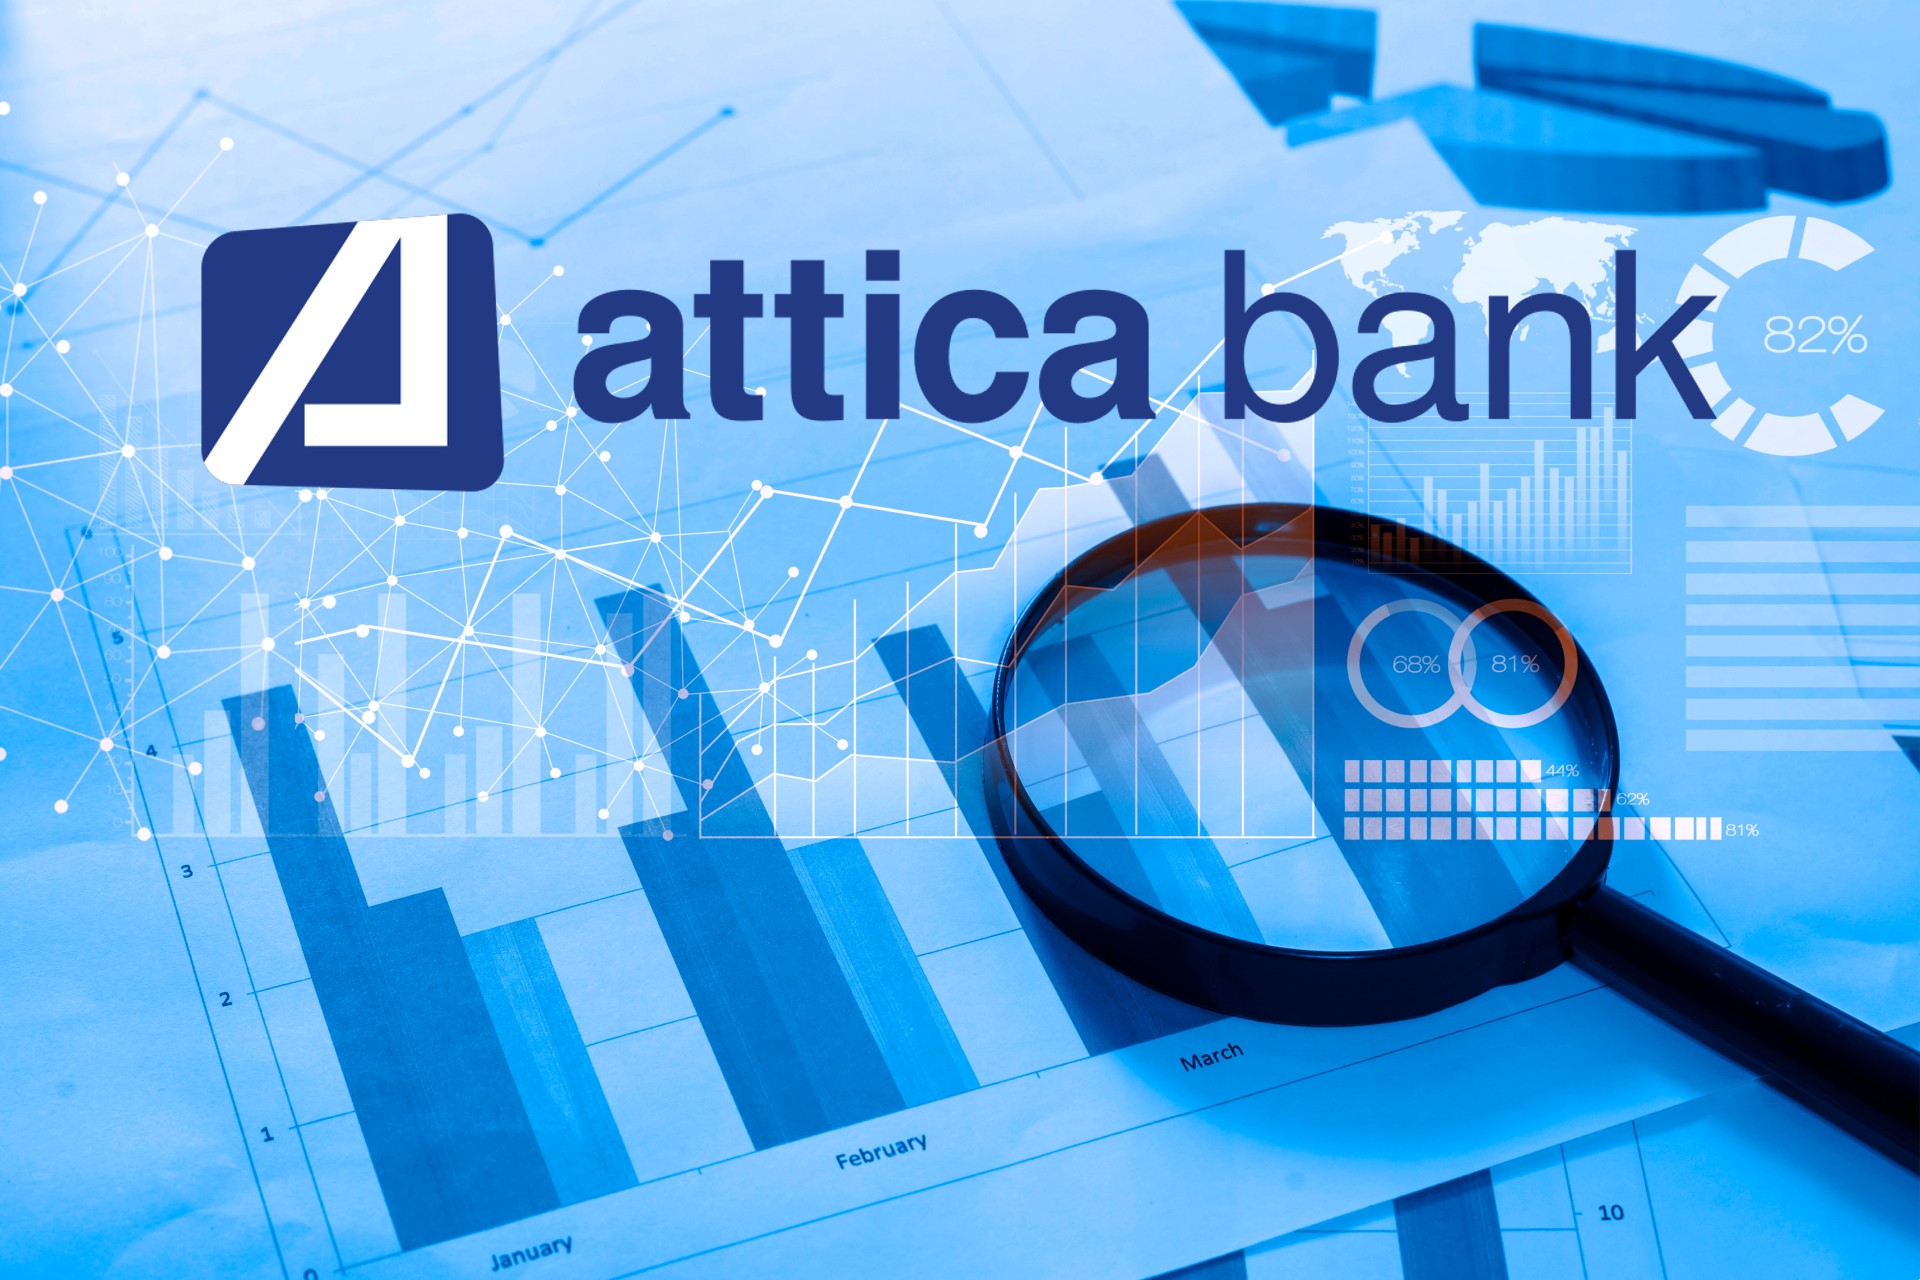 Όλη η αλήθεια για την Attica bank: Στον αέρα η ΑΜΚ! Ποιος θα βάλει τα λεφτά; Πόσα κεφάλαια θα χρειαστούν; Ο ρόλος και οι ευθύνες Πατέλη- ΤτΕ και ΤΜΕΔΕ!